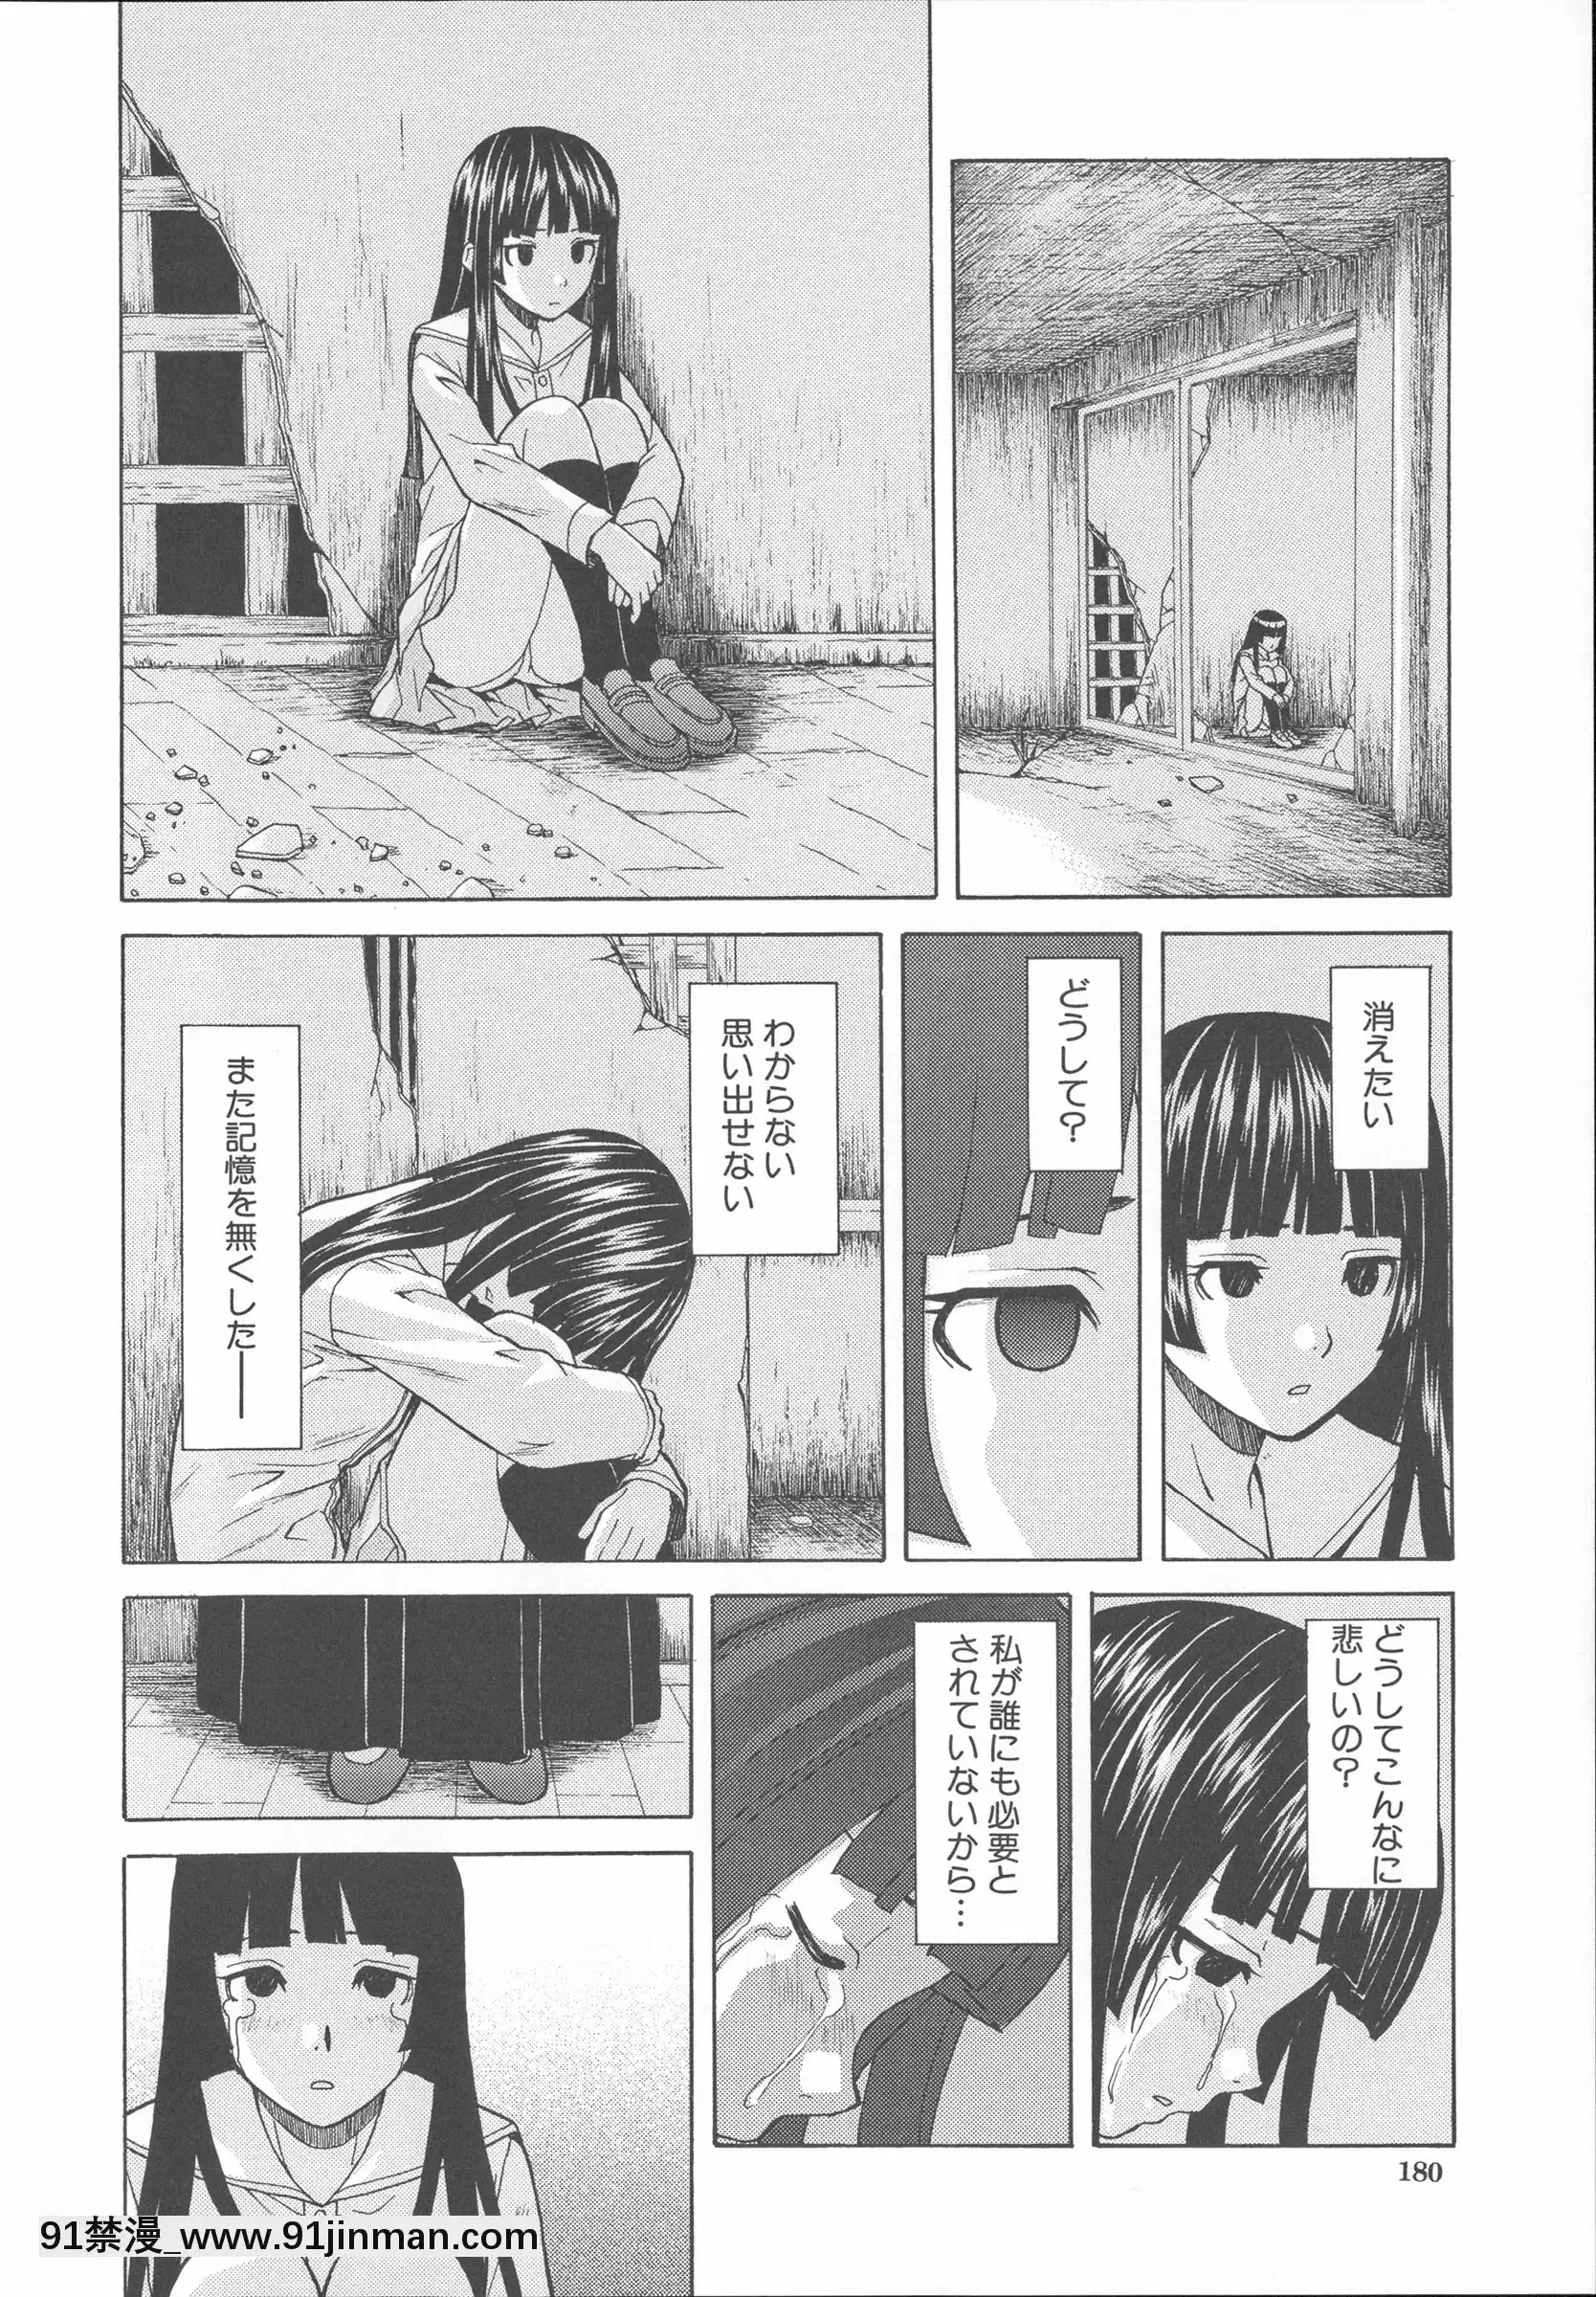 [枫 牙] Hoàn cảnh của anh trai và em gái.【truyện tranh kin no kanojo gin no kanojo】